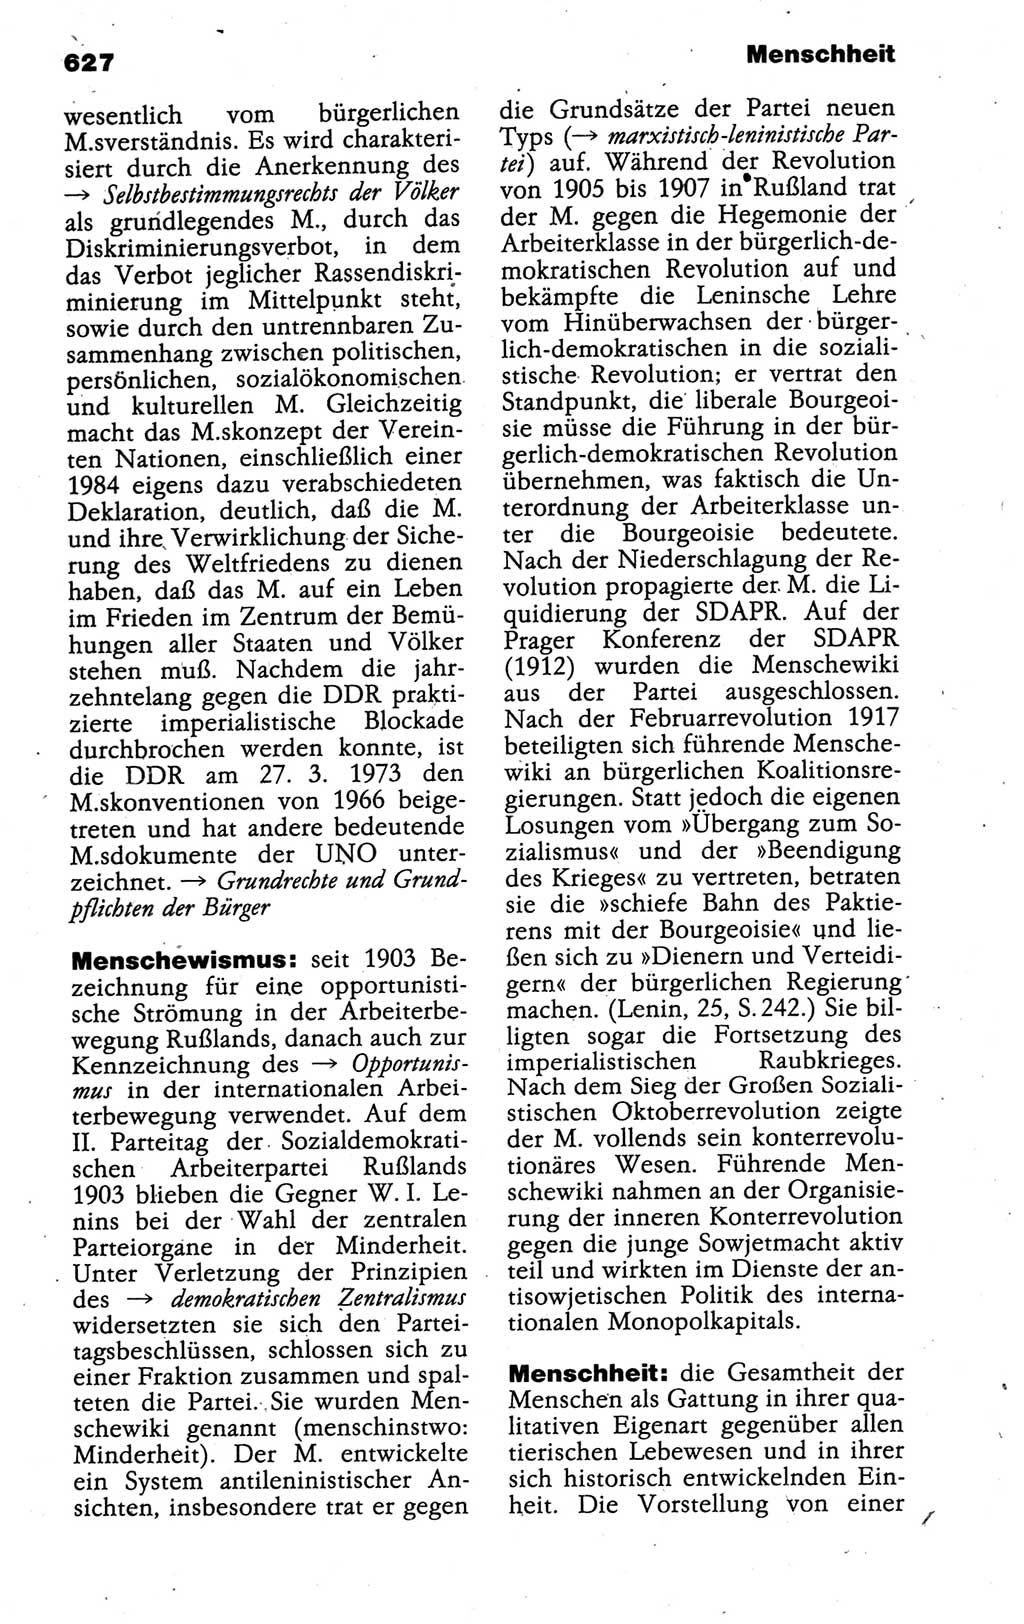 Kleines politisches Wörterbuch [Deutsche Demokratische Republik (DDR)] 1988, Seite 627 (Kl. pol. Wb. DDR 1988, S. 627)